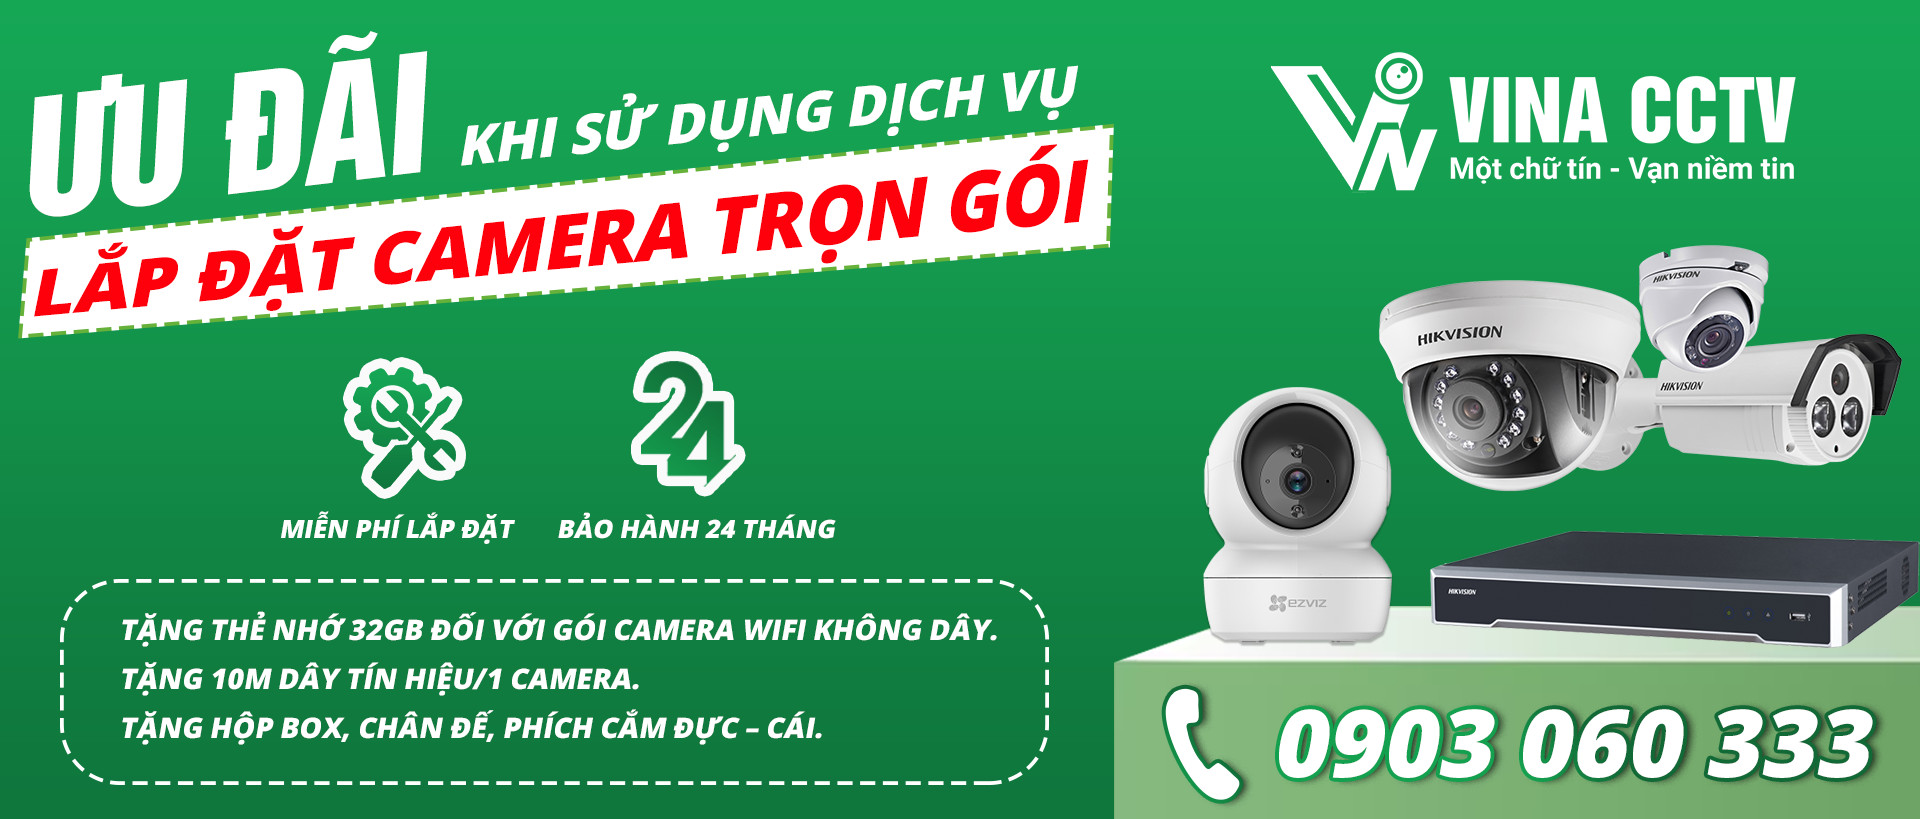 Khuyến mãi khi sử dụng Dịch vụ Lắp đặt Camera Trọn Gói tại VINA CCTV